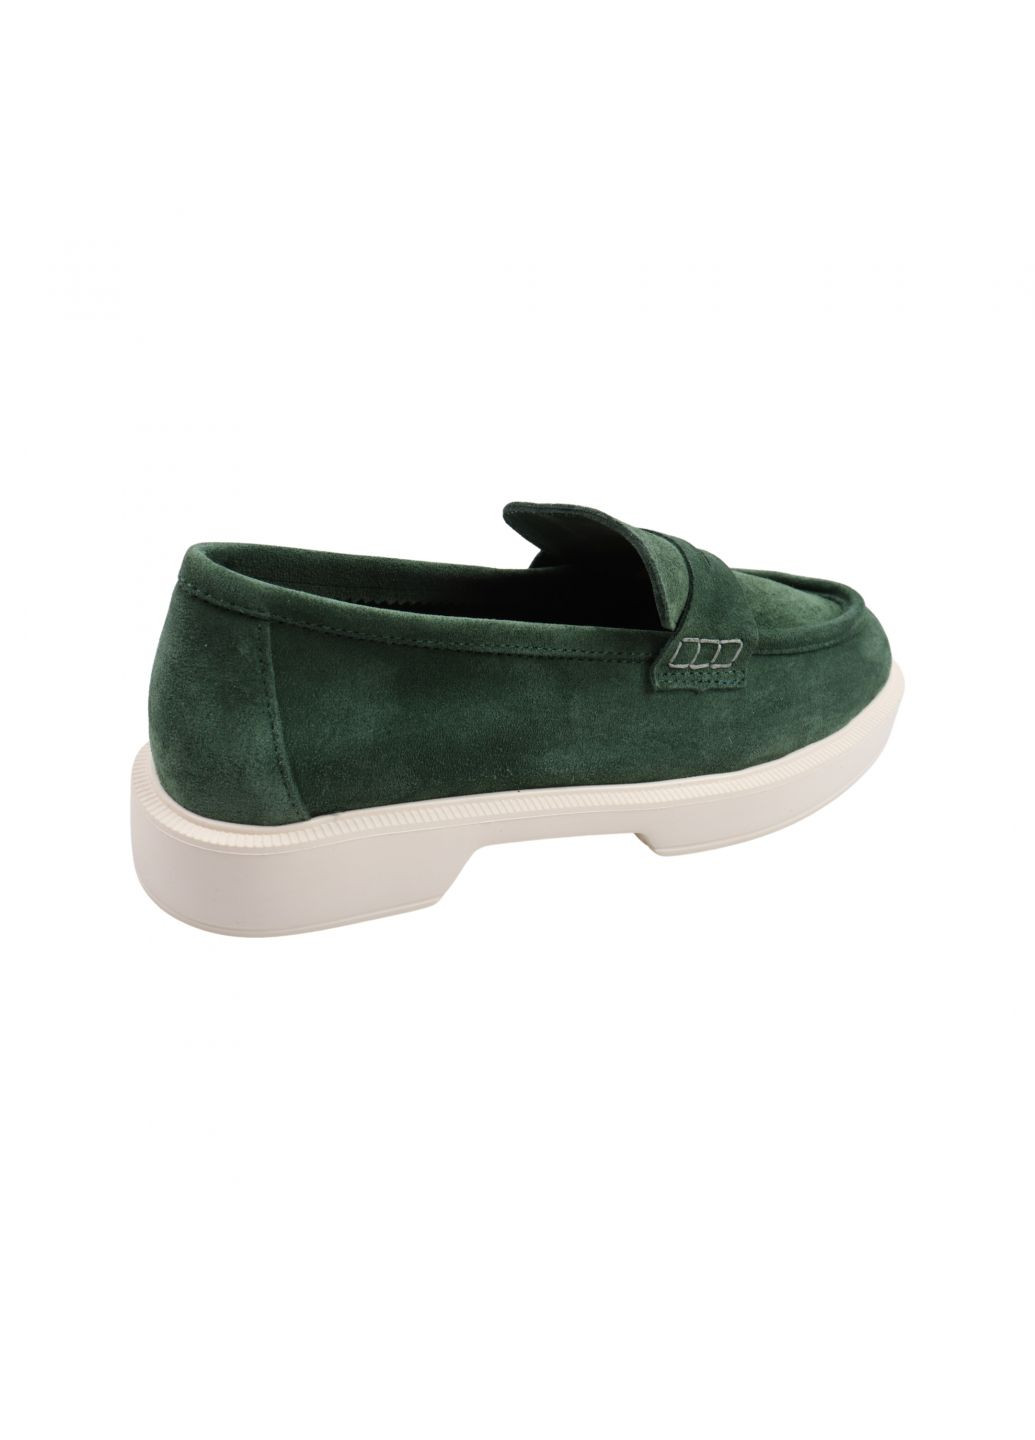 Туфлі жіночі зелені натуральна замша Tucino 607-23dtc (257933357)